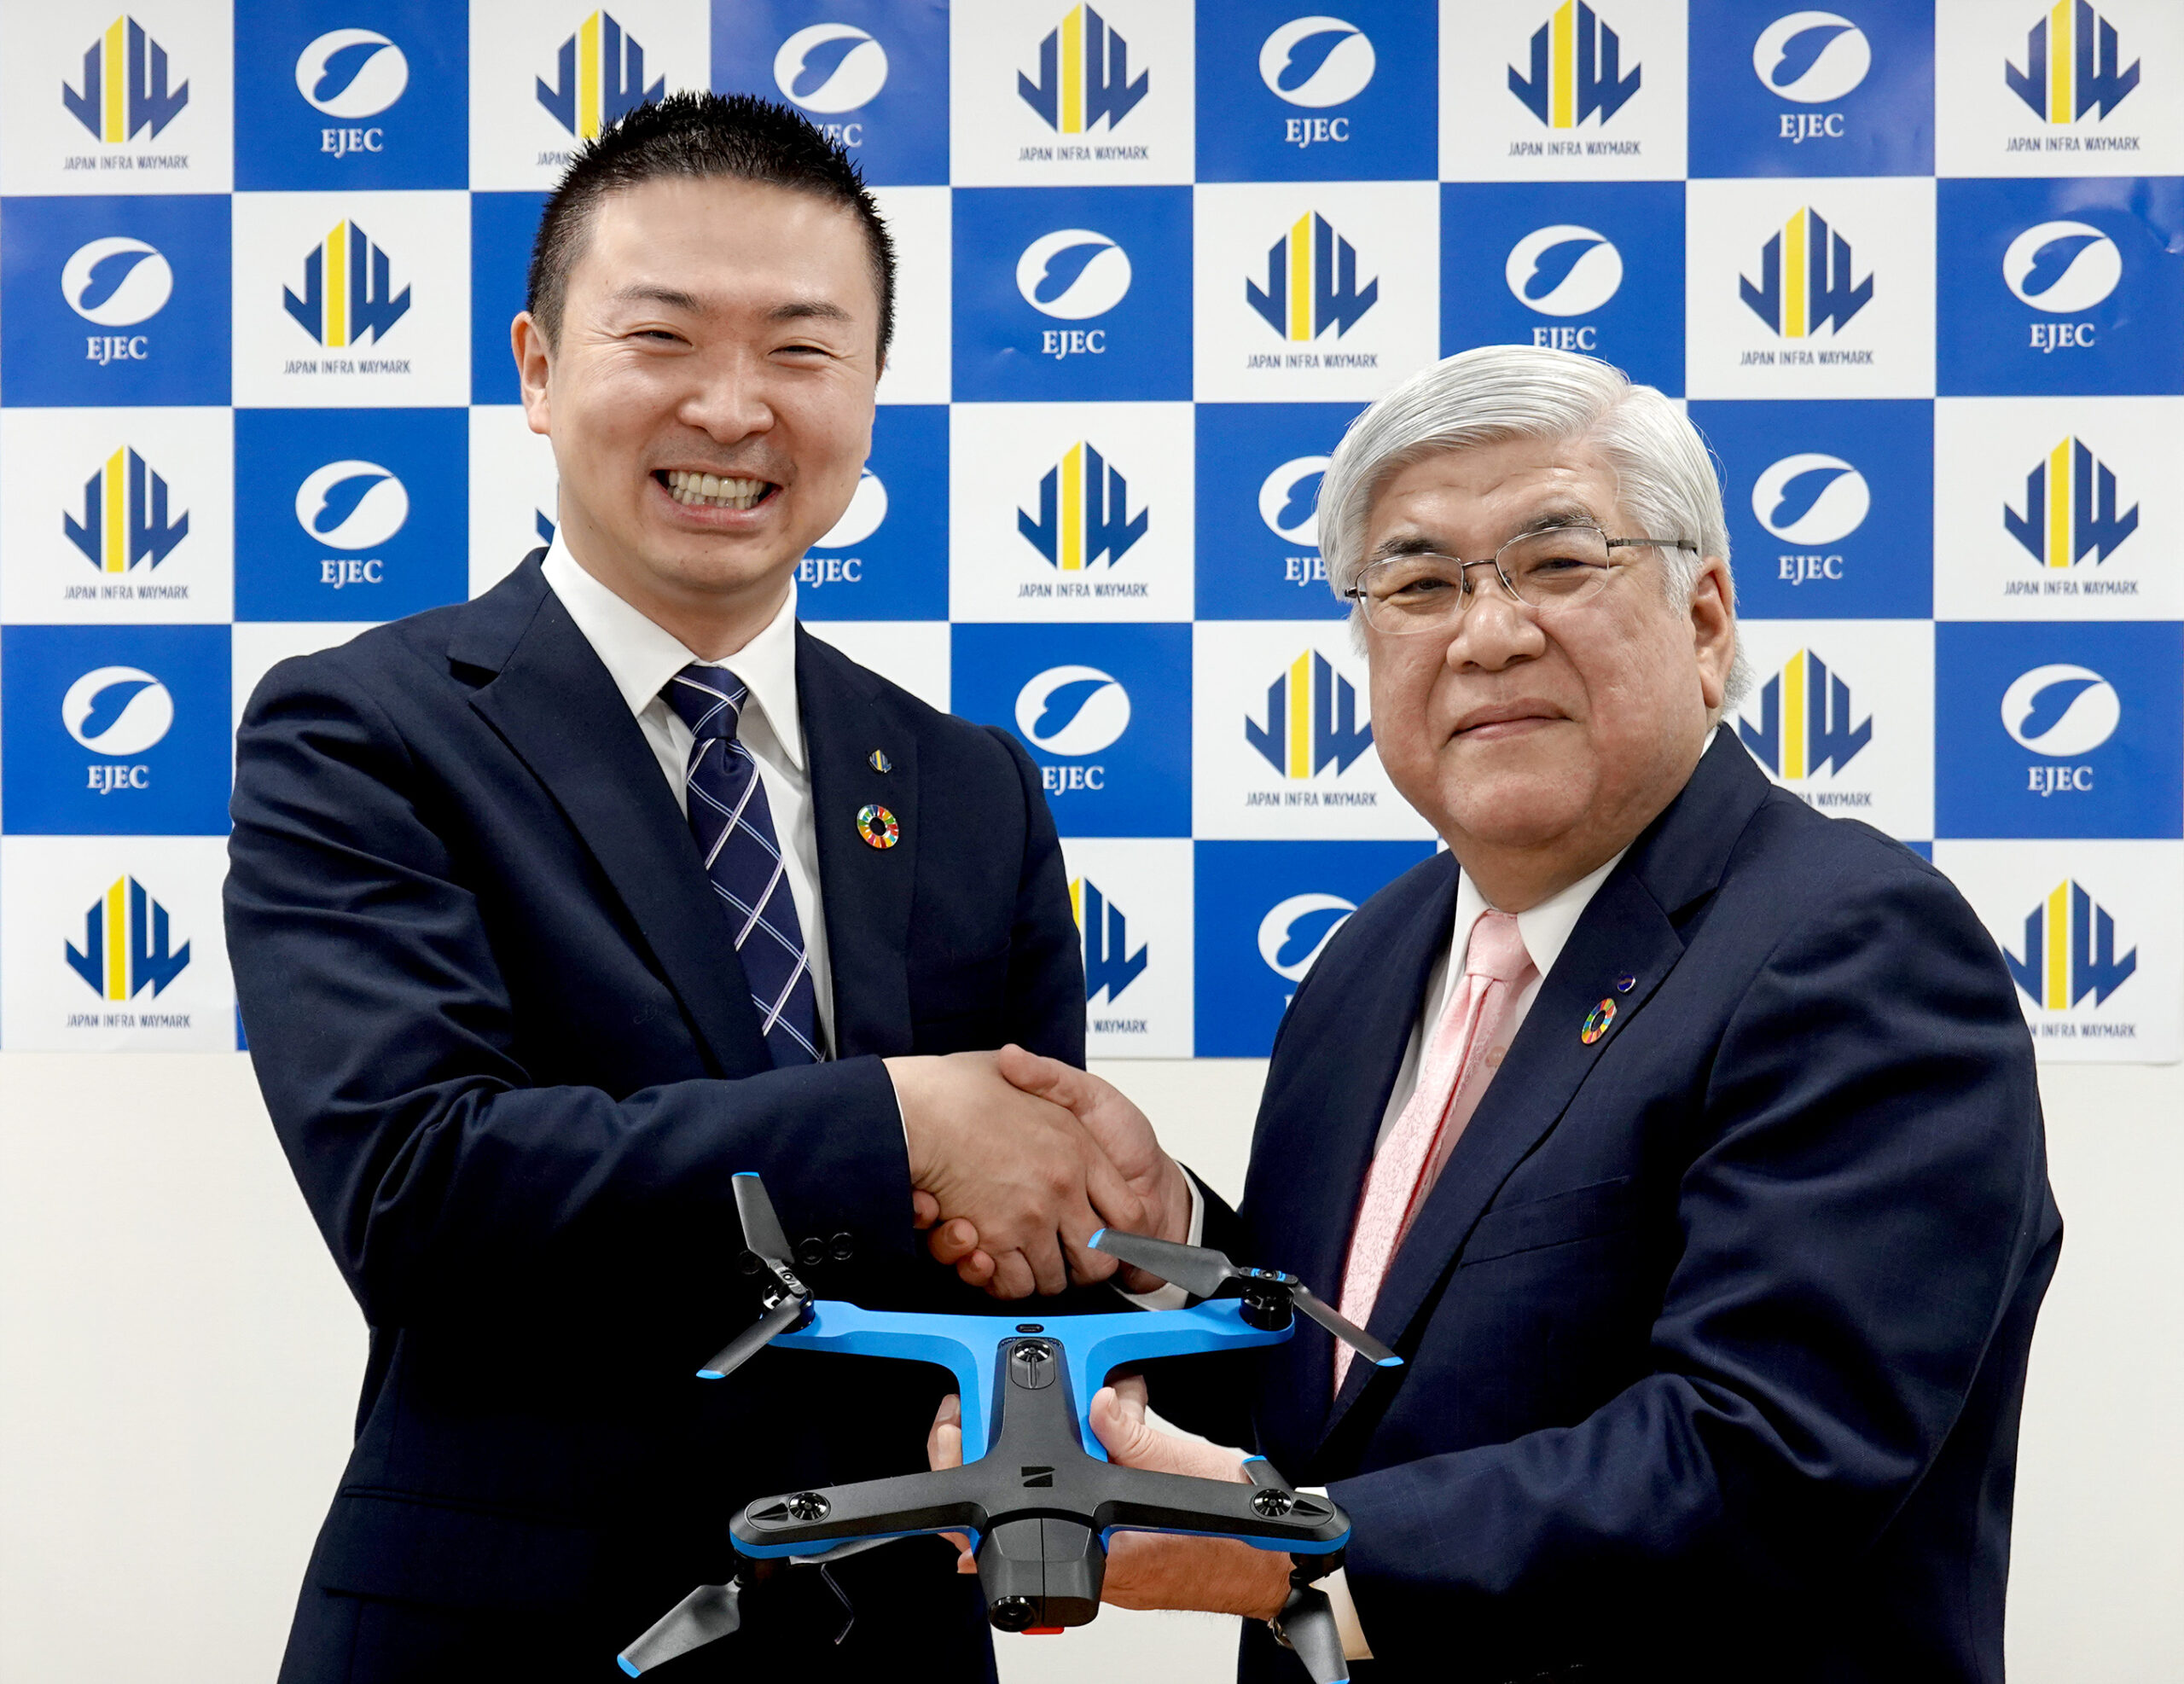 20200324小型ドローンに関する協定調印式（JIW柴田社長（左）とEJEC小谷）